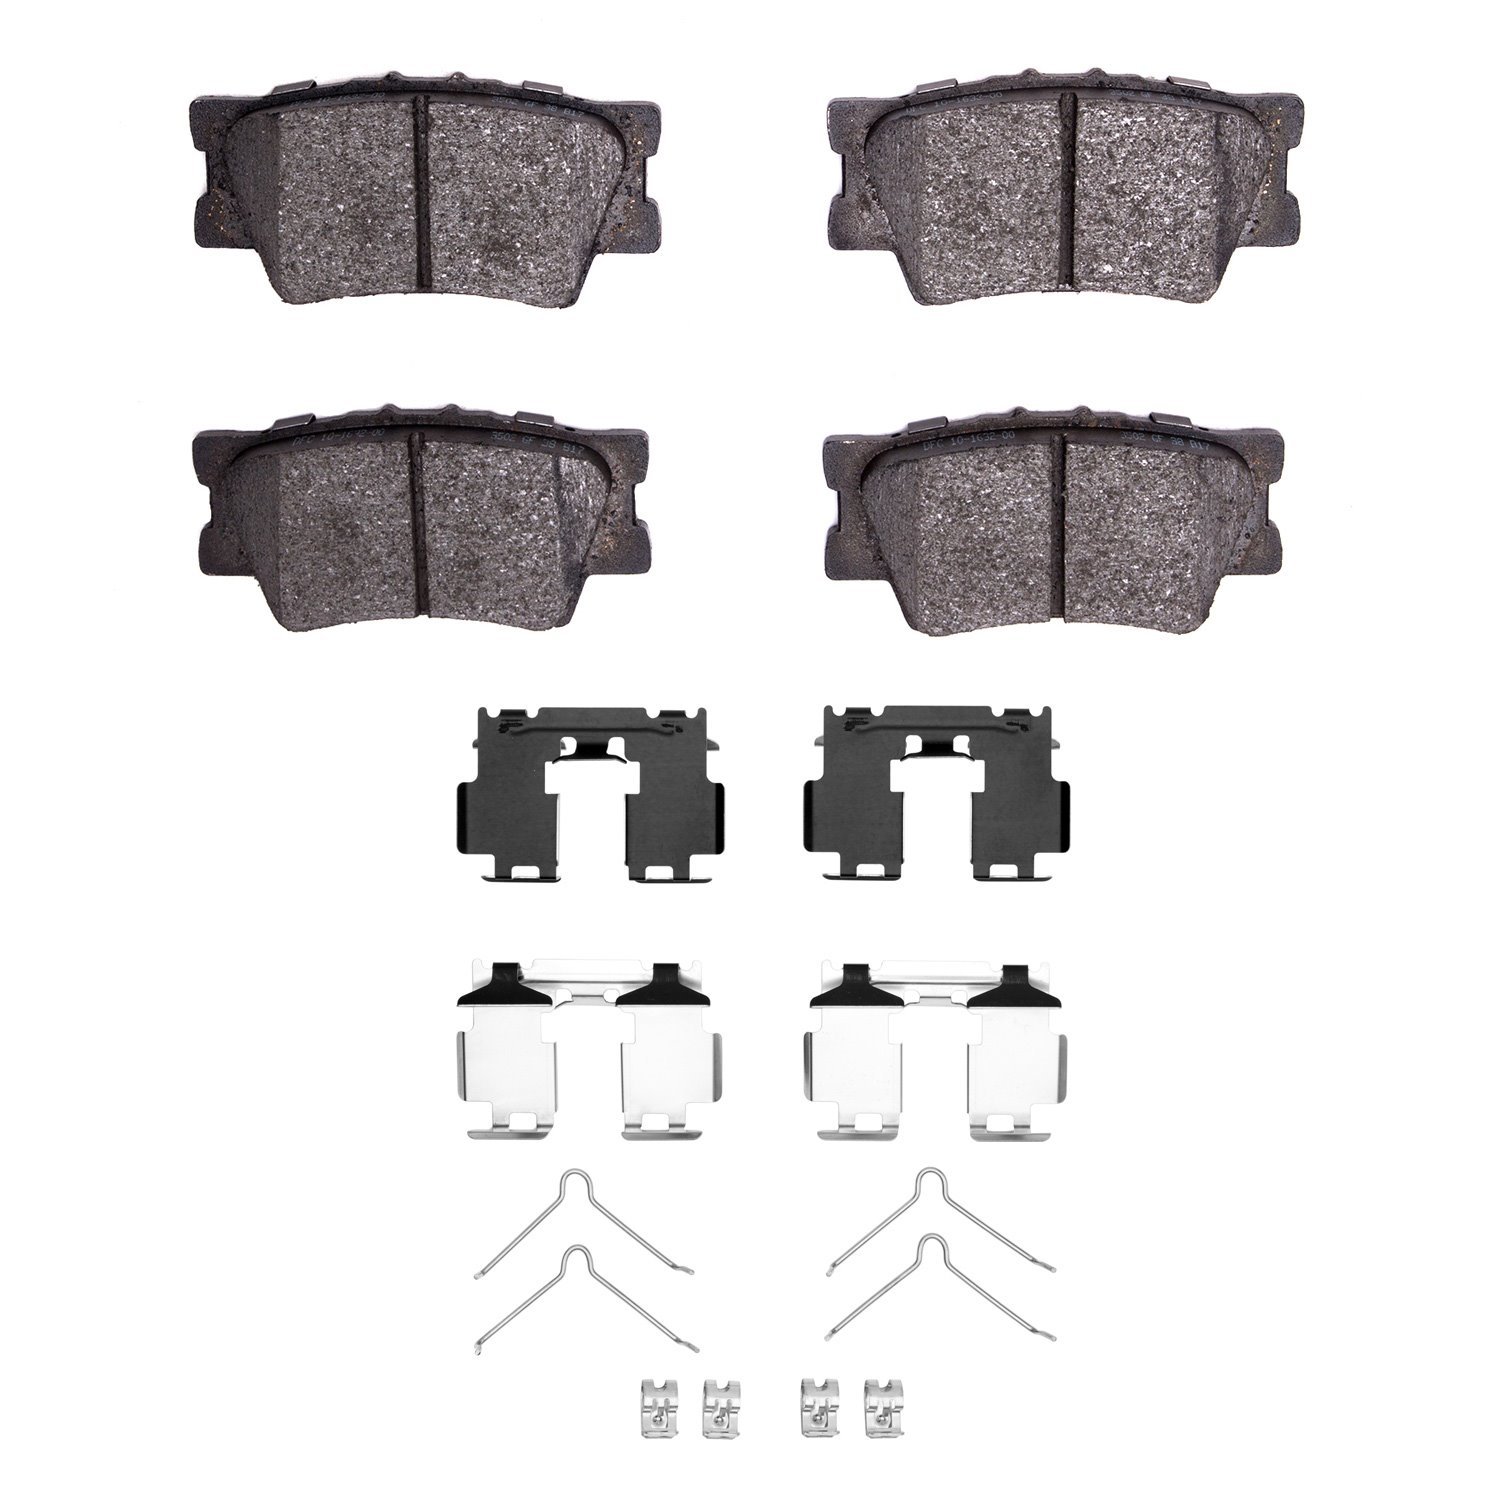 1310-1632-01 3000-Series Ceramic Brake Pads & Hardware Kit, 2006-2018 Lexus/Toyota/Scion, Position: Rear